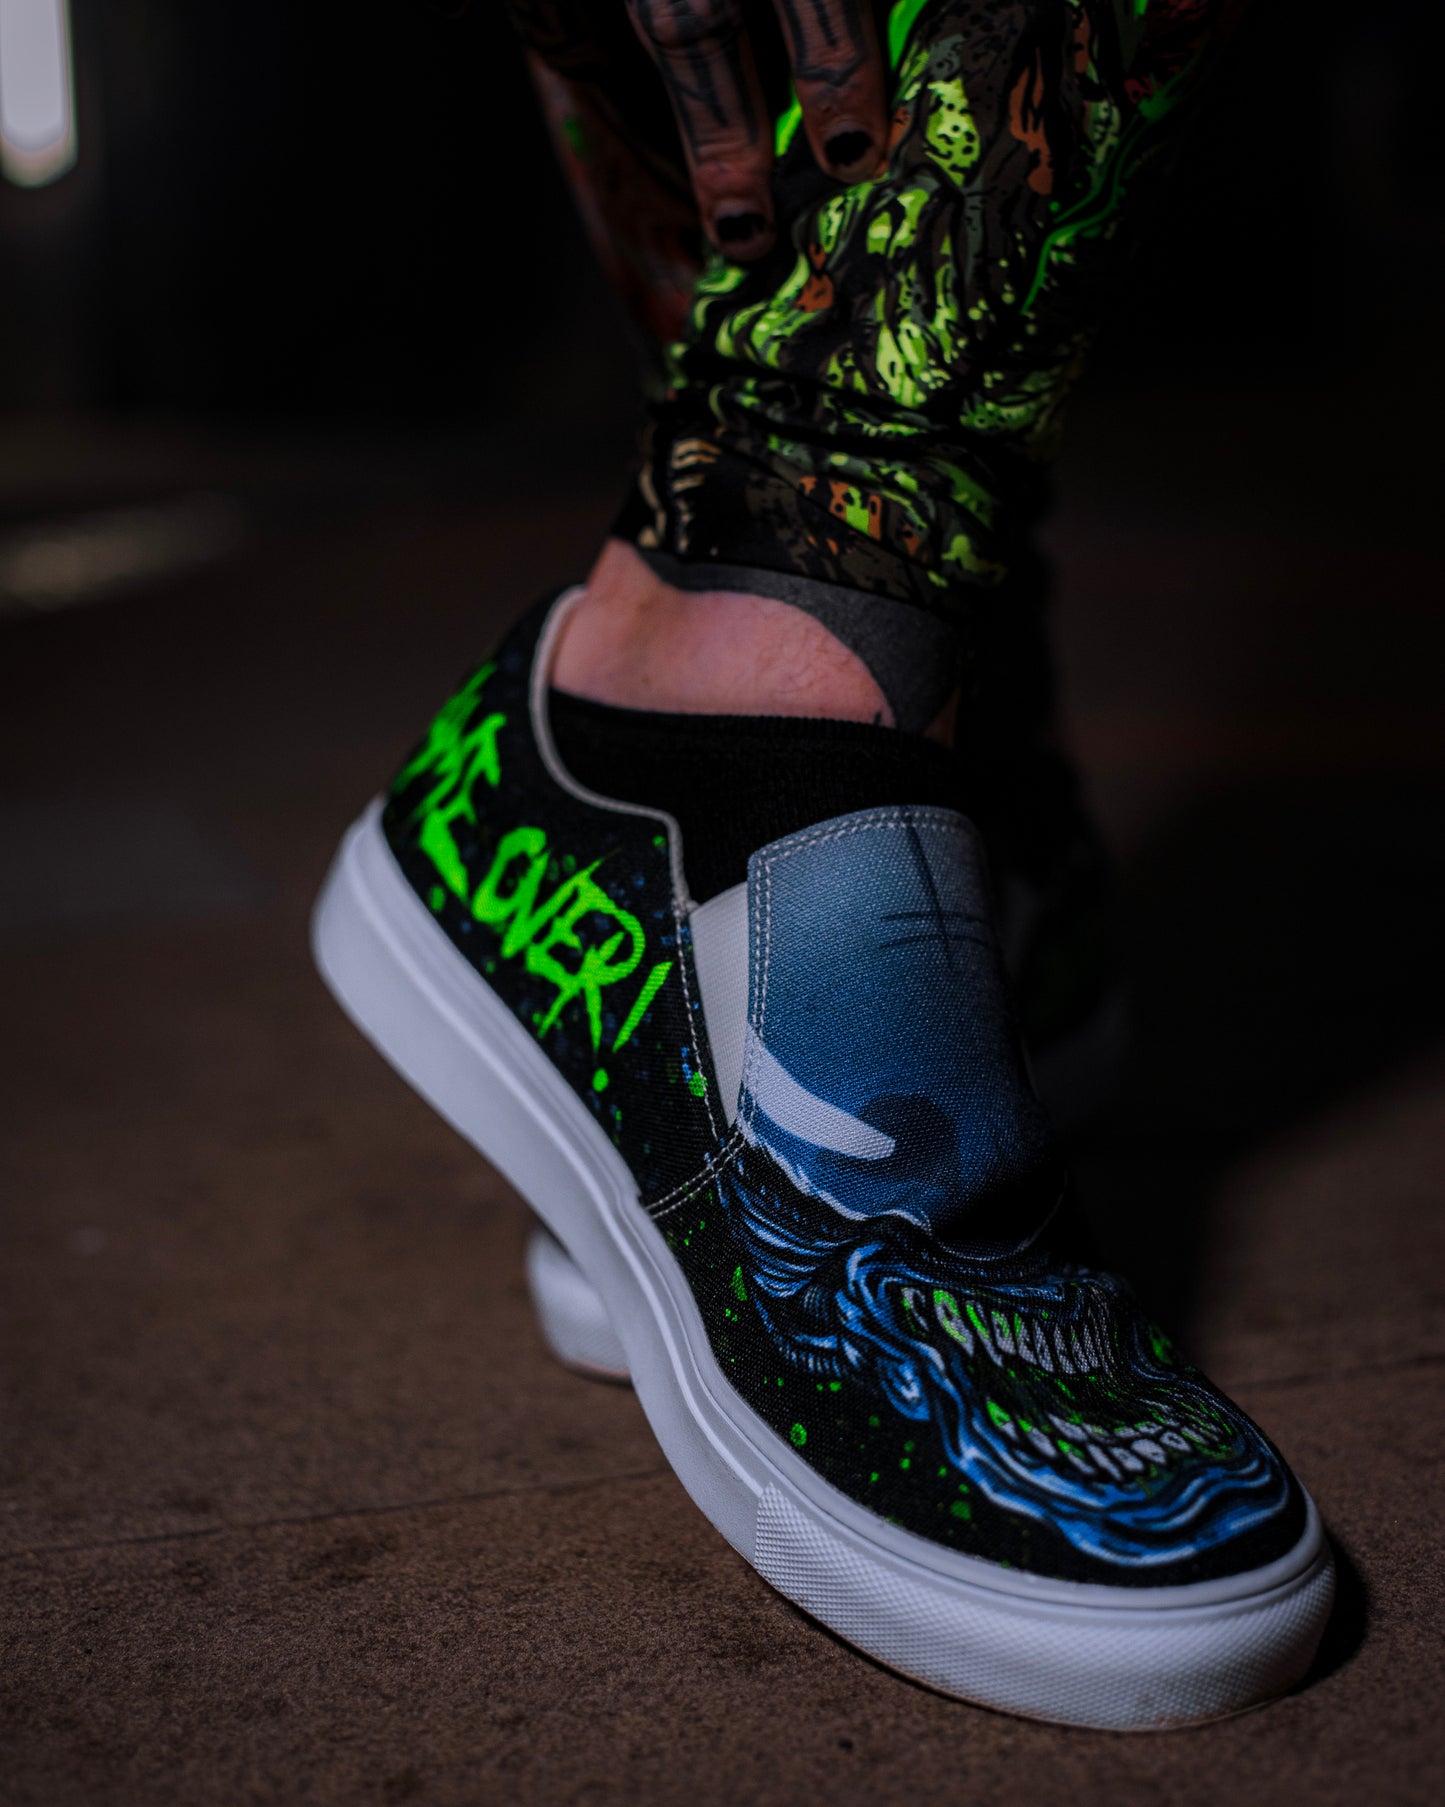 Aliens Slip-on Shoes